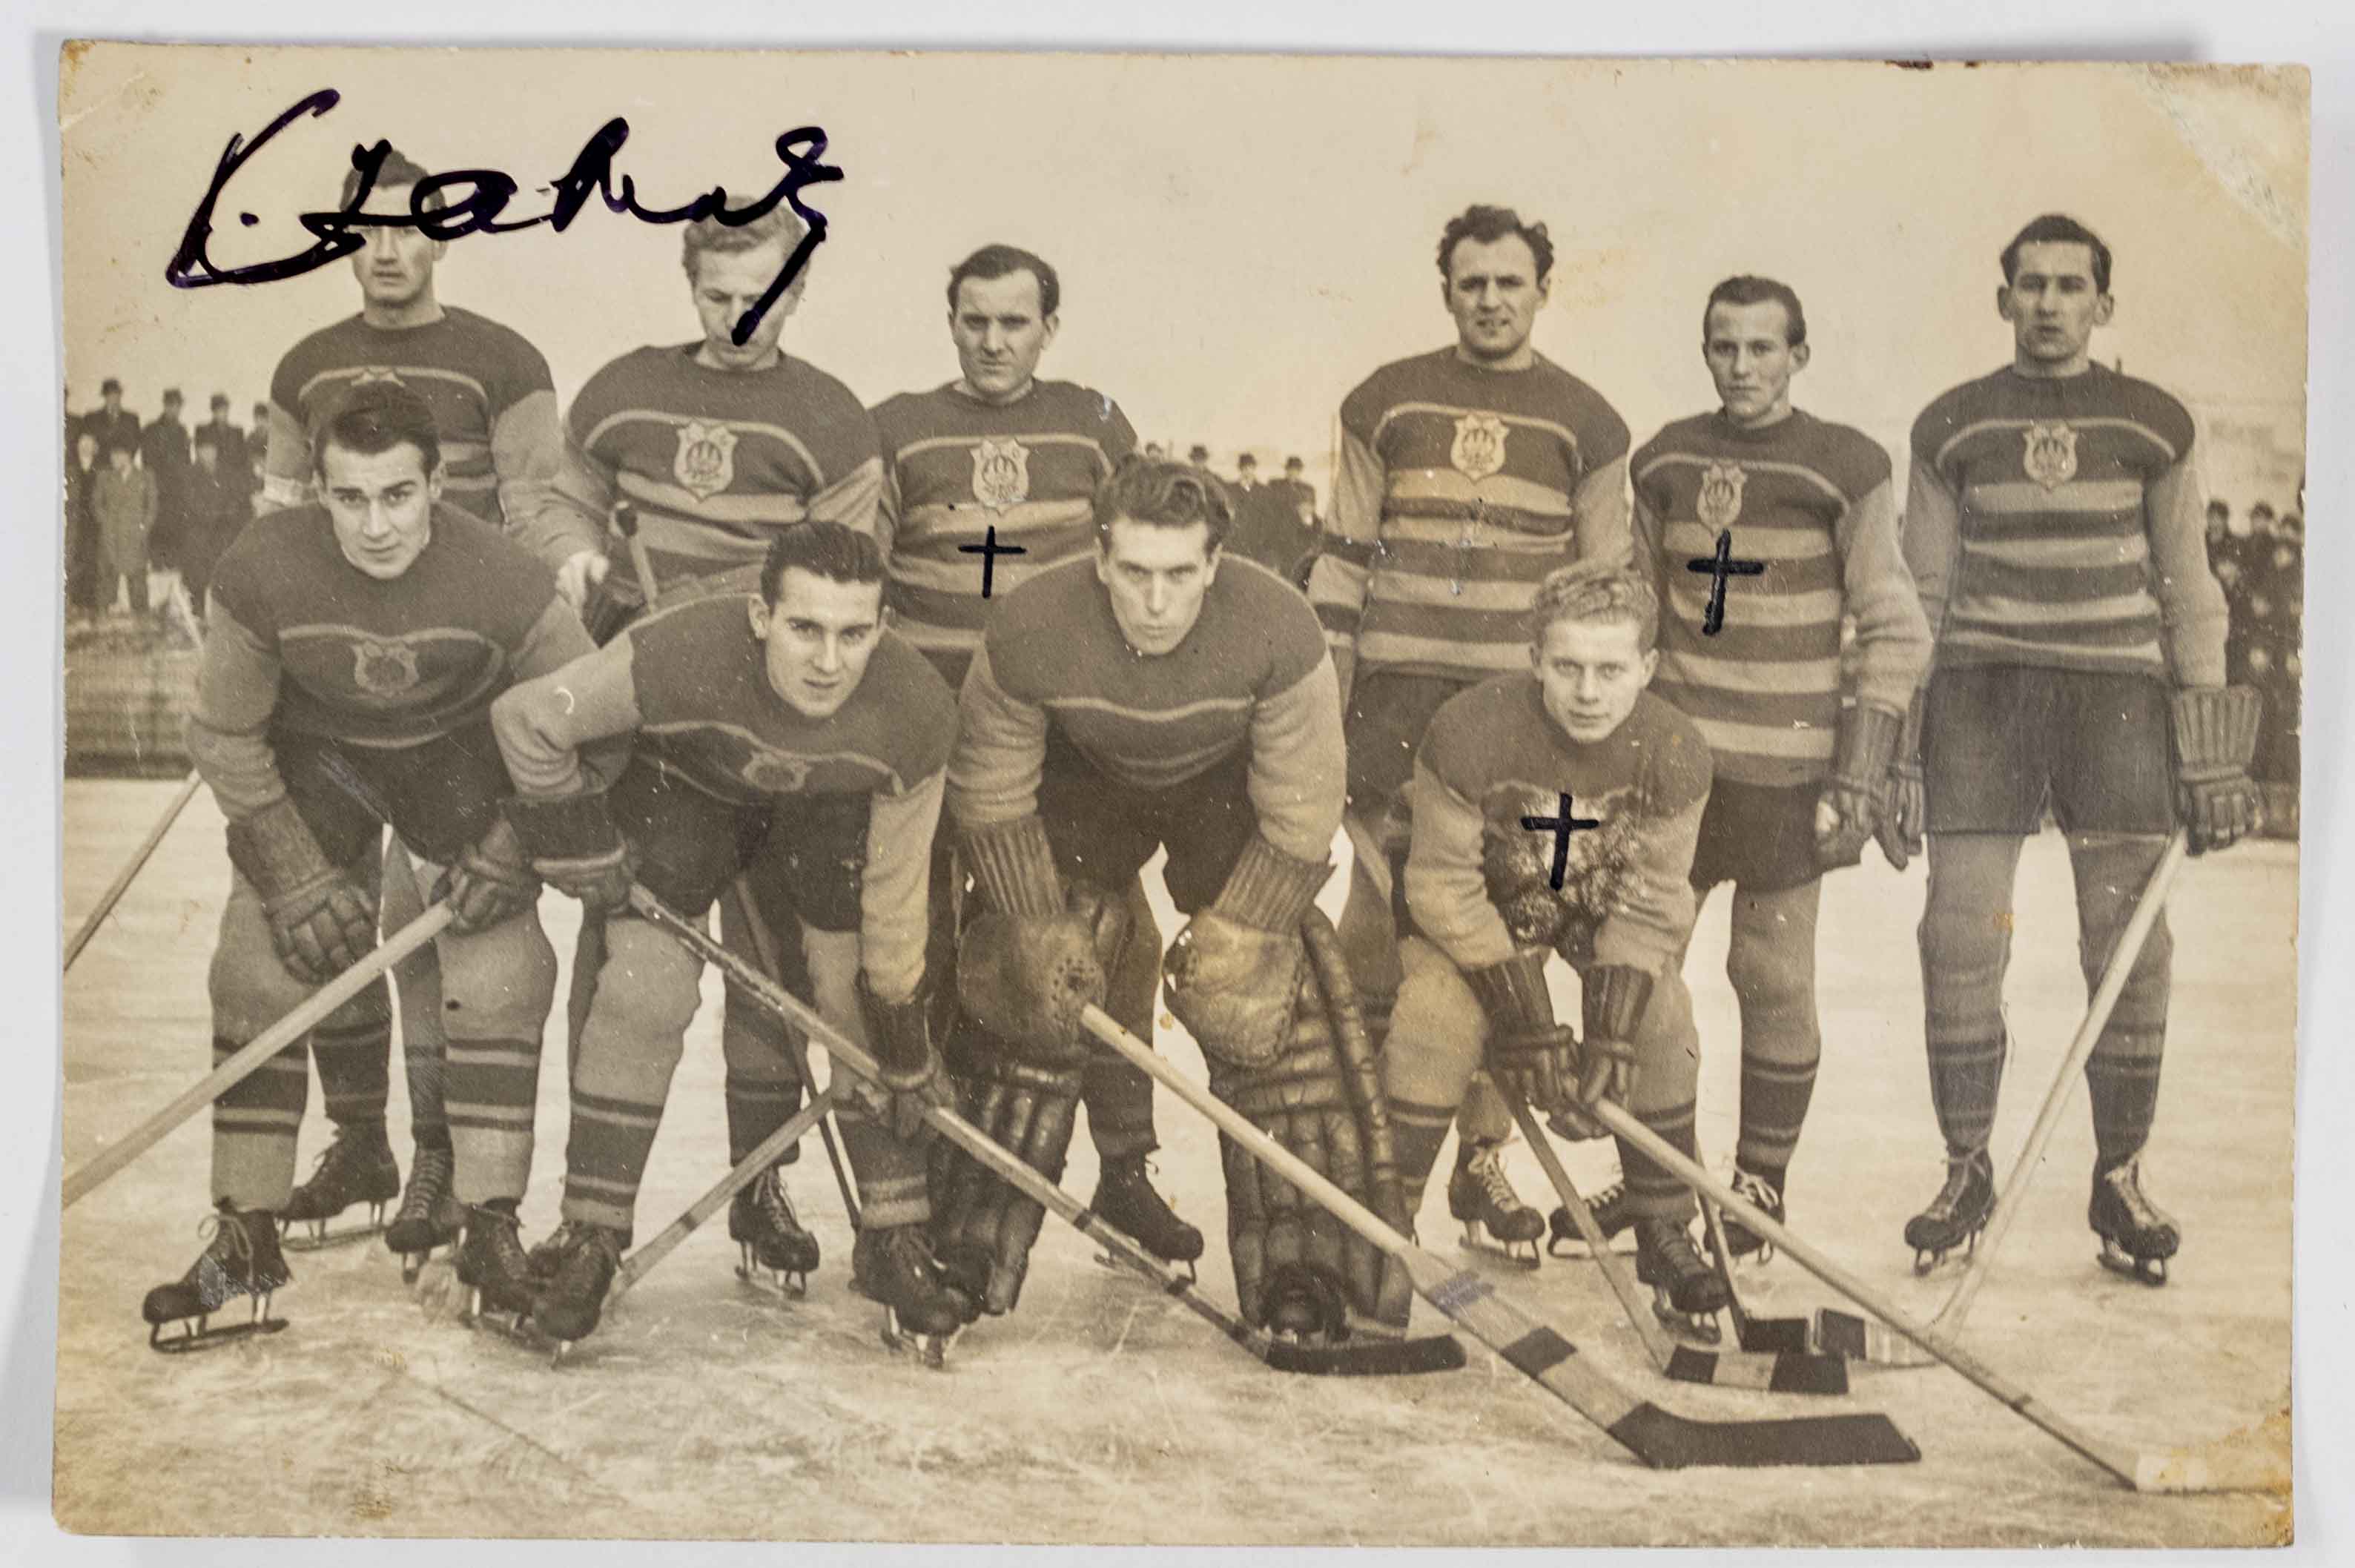 Fotografie - hokejový tým LTC, 1941